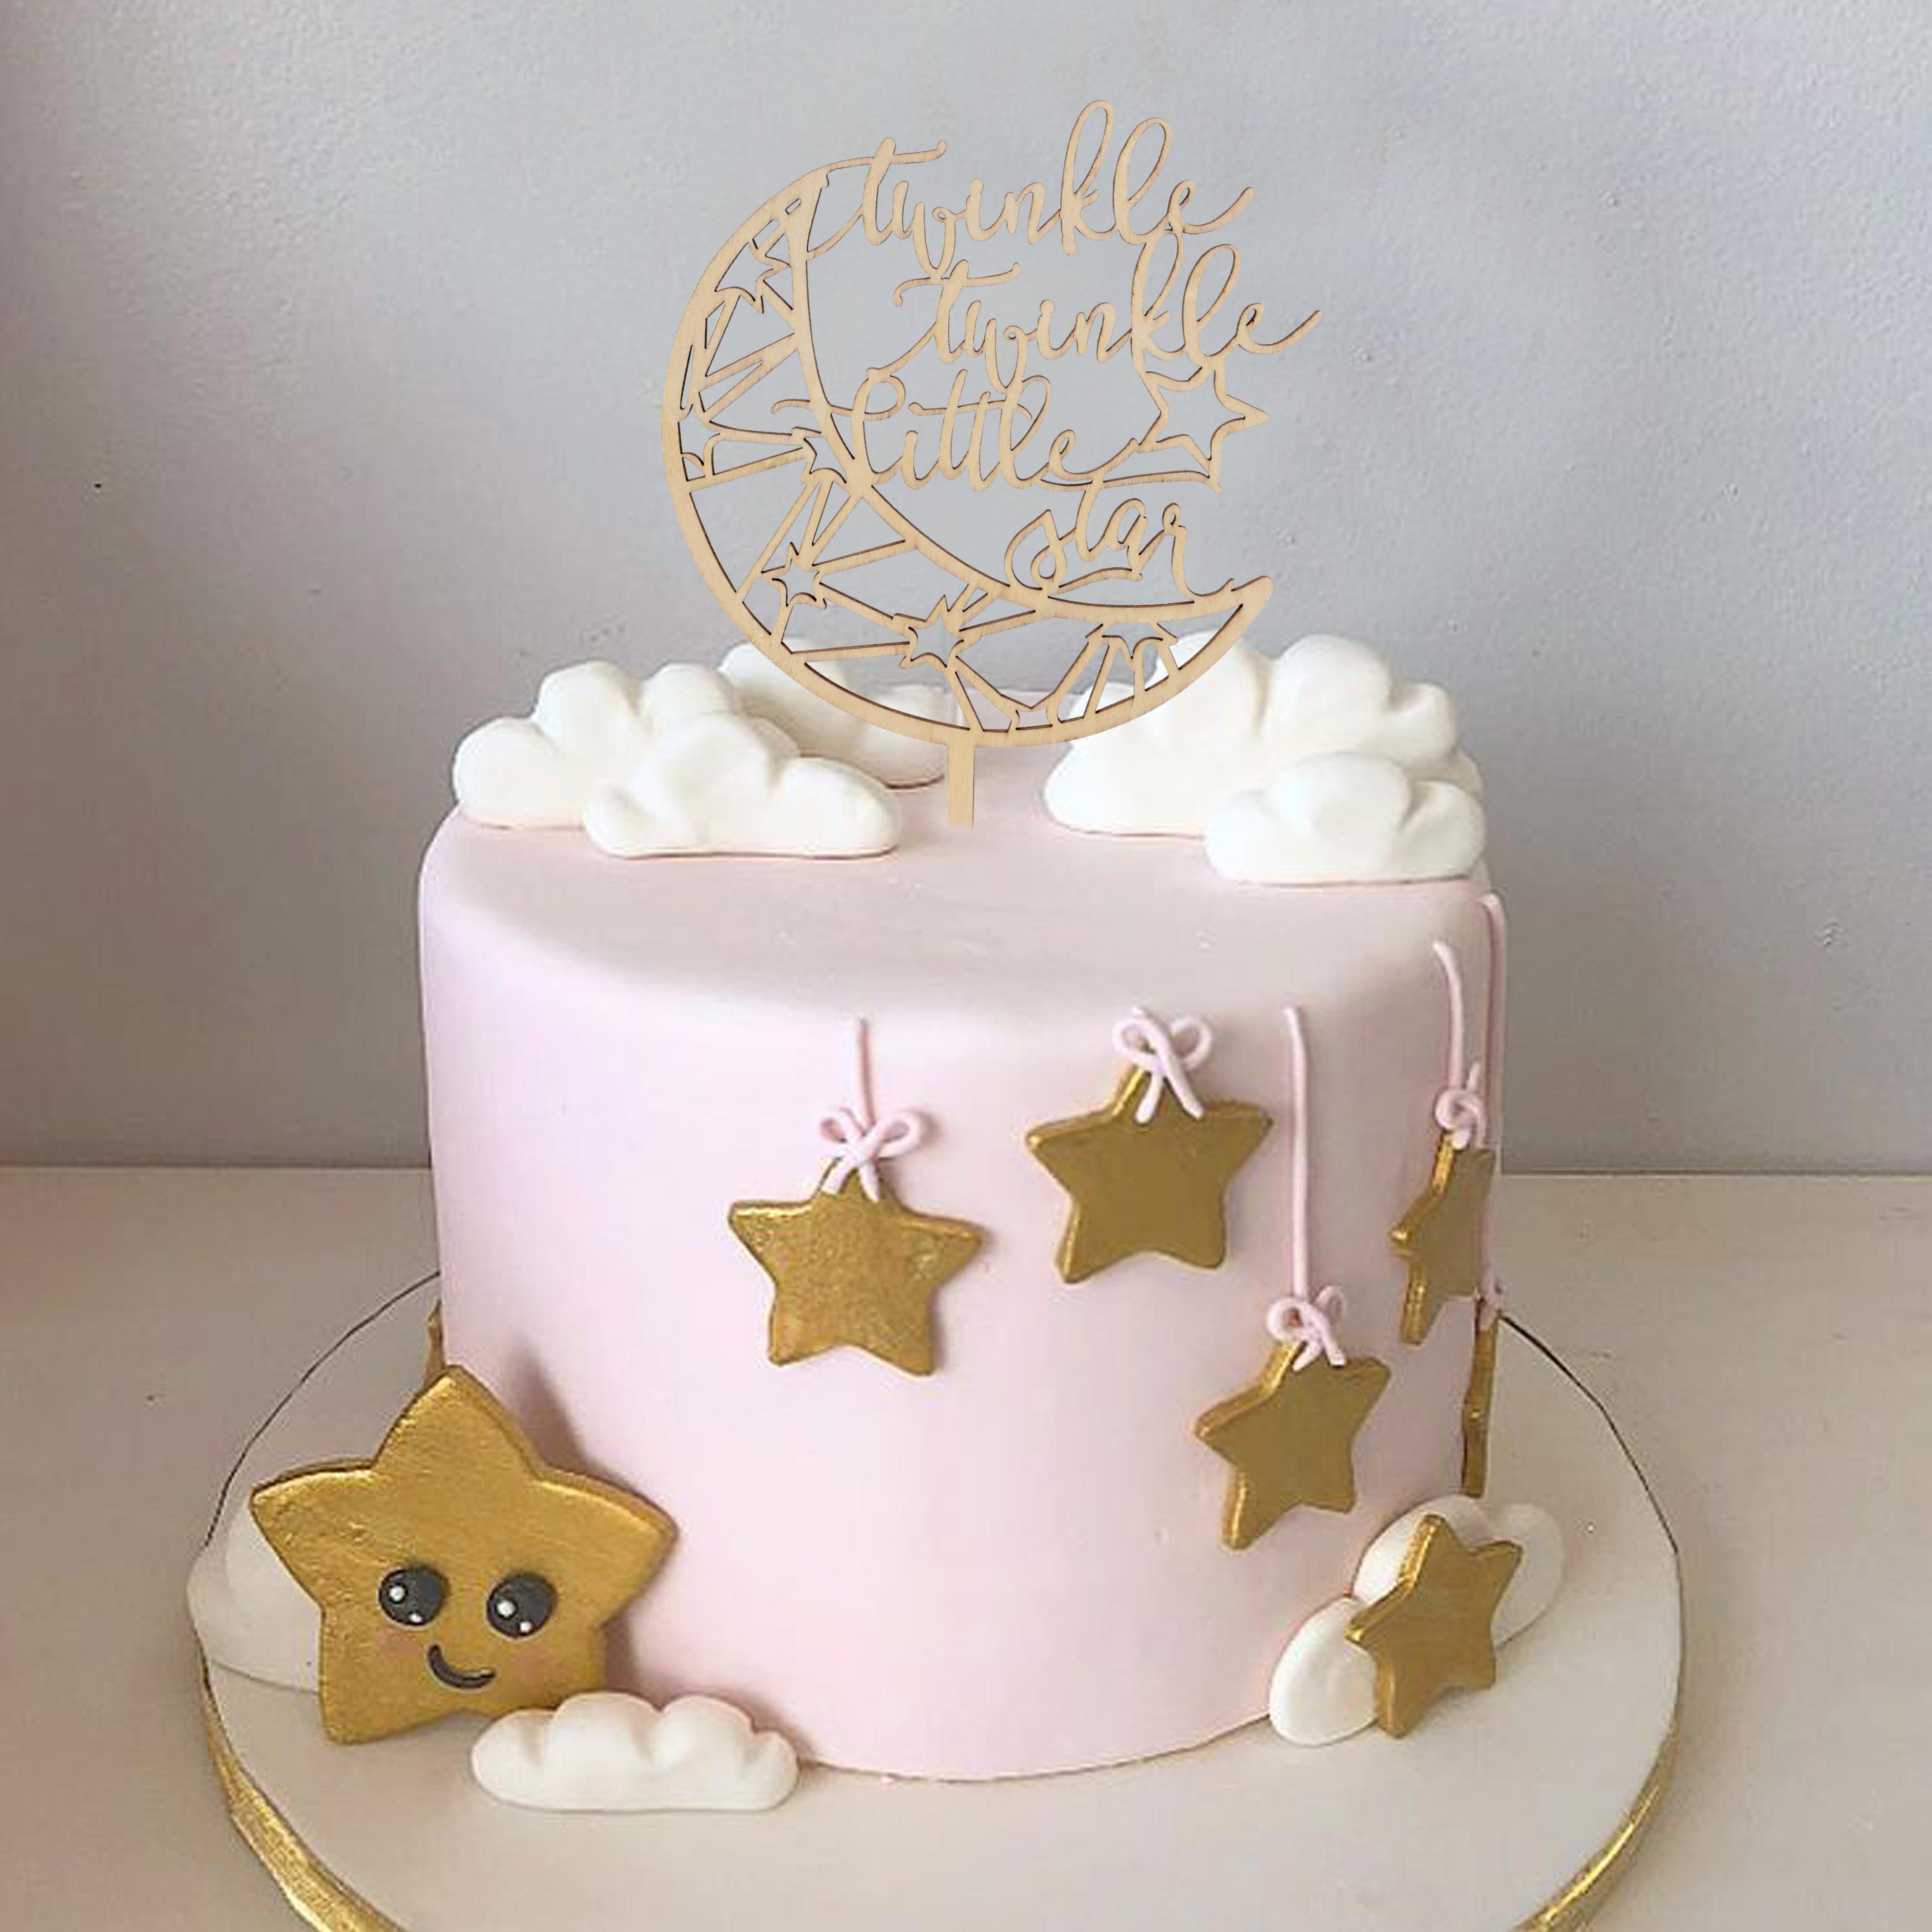 Twinkle Twinkle Little Star Cake